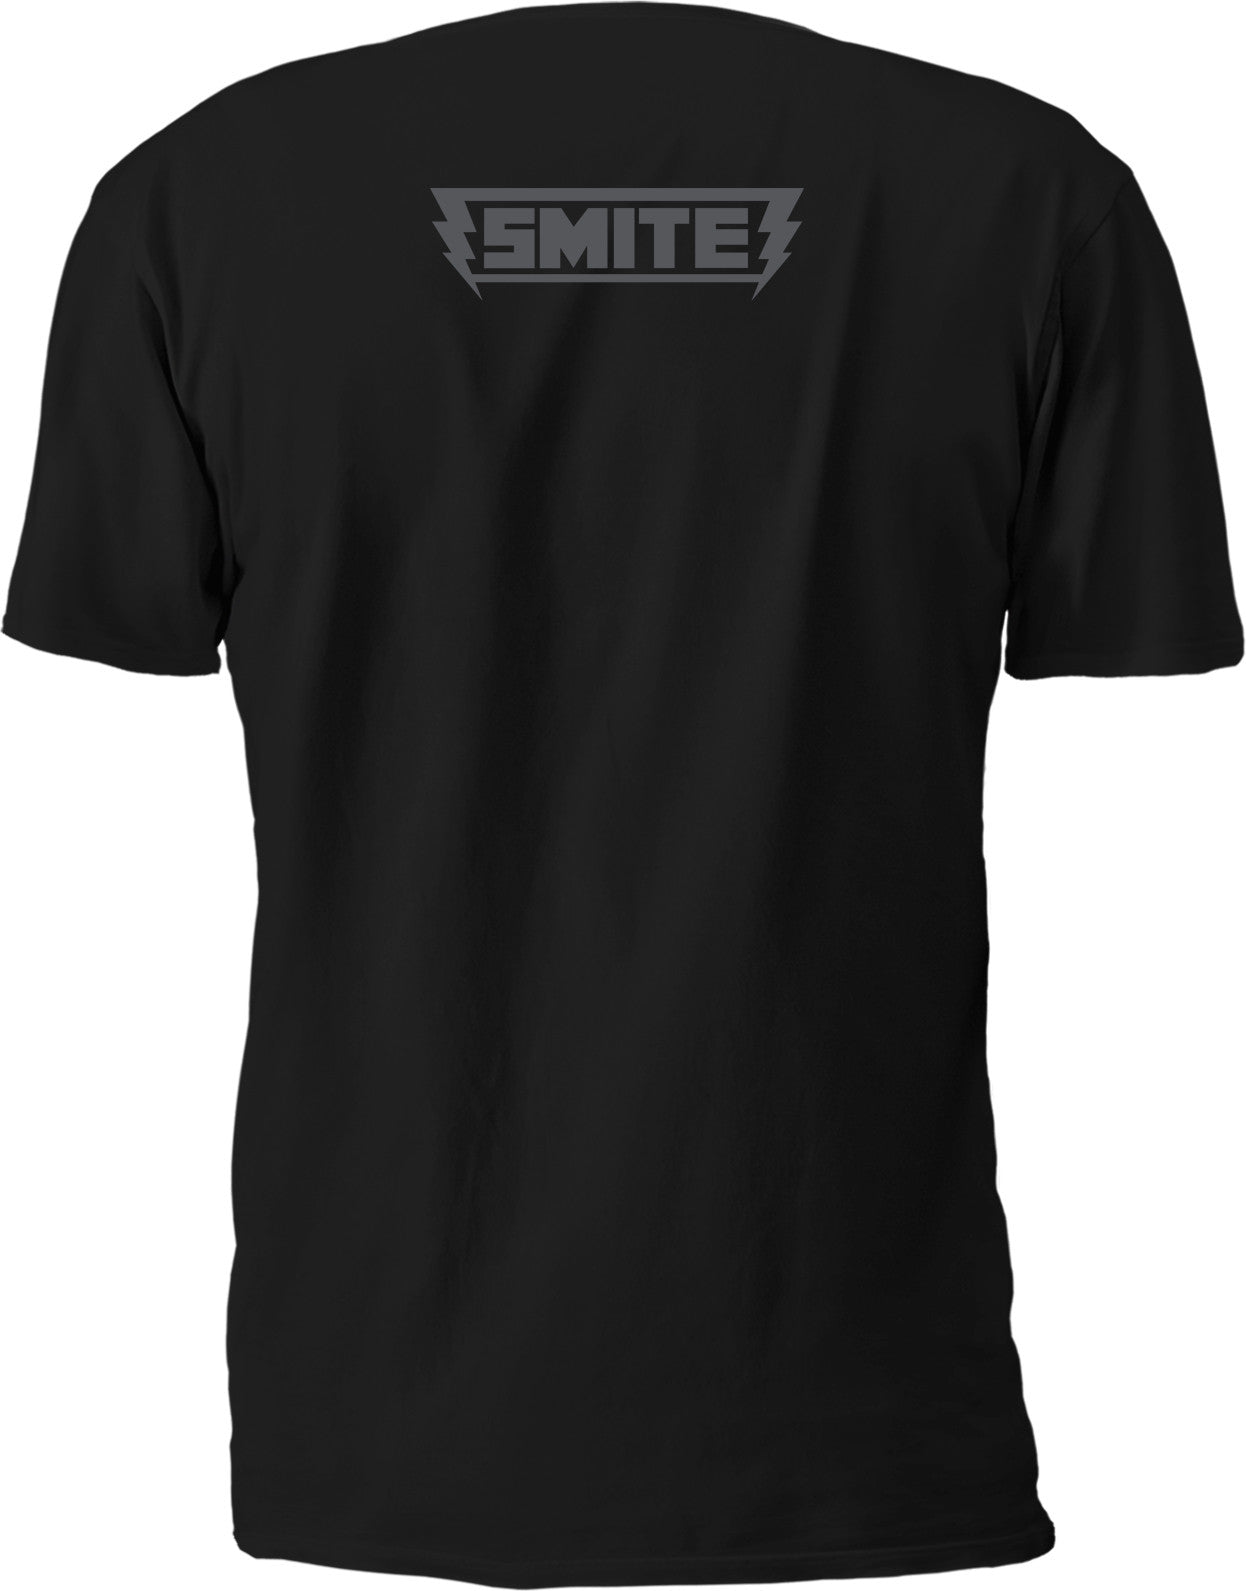 Smite Greek Pantheon T-shirt